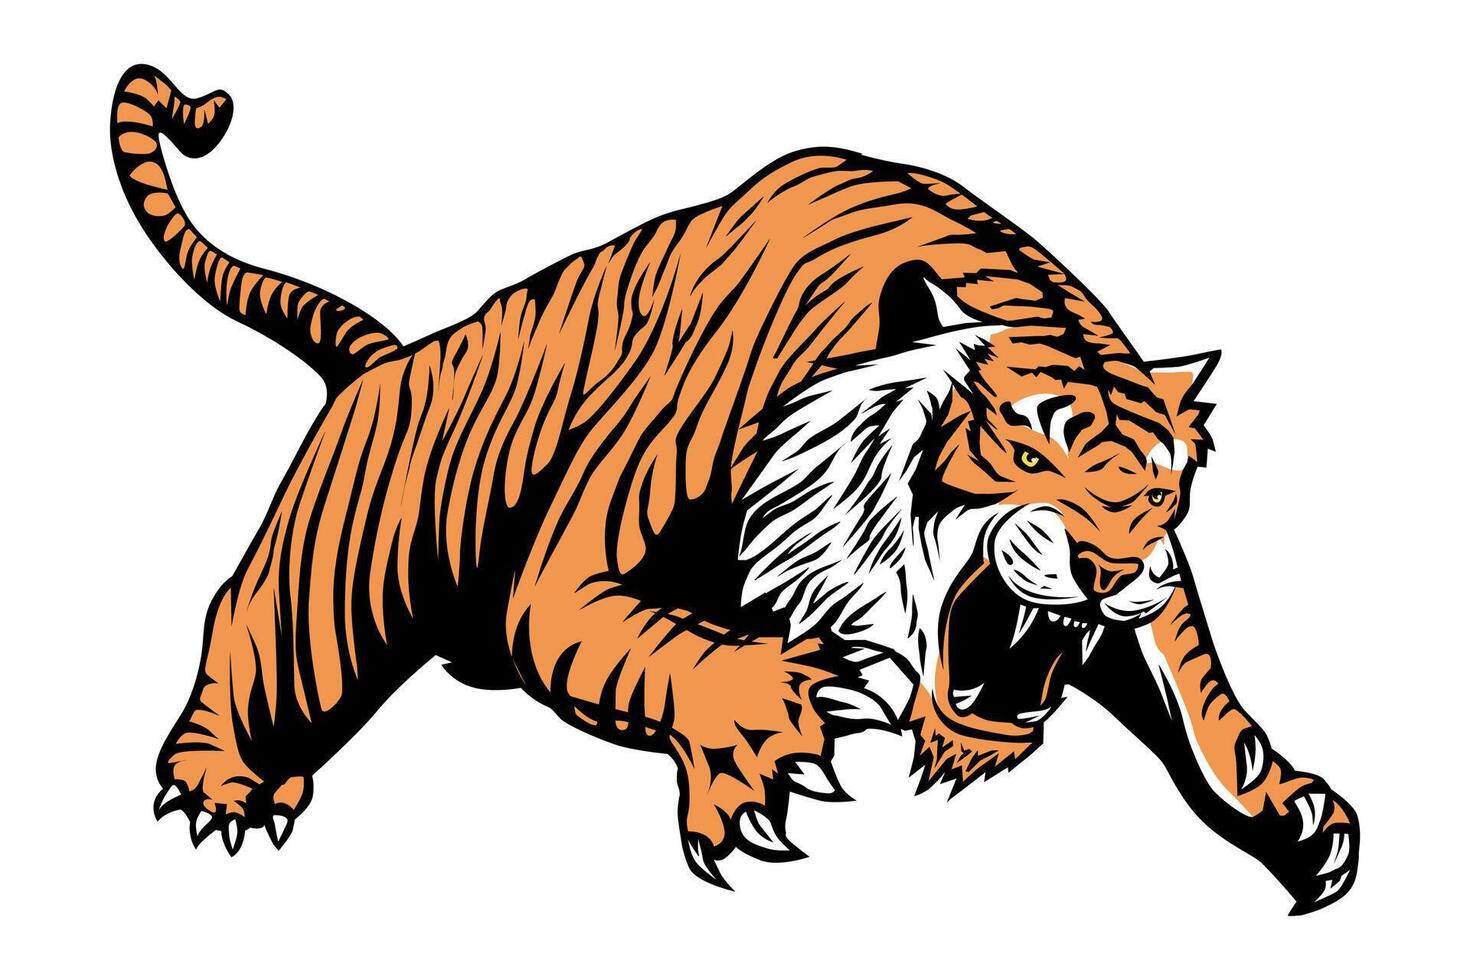 Tiger attack vector illustration